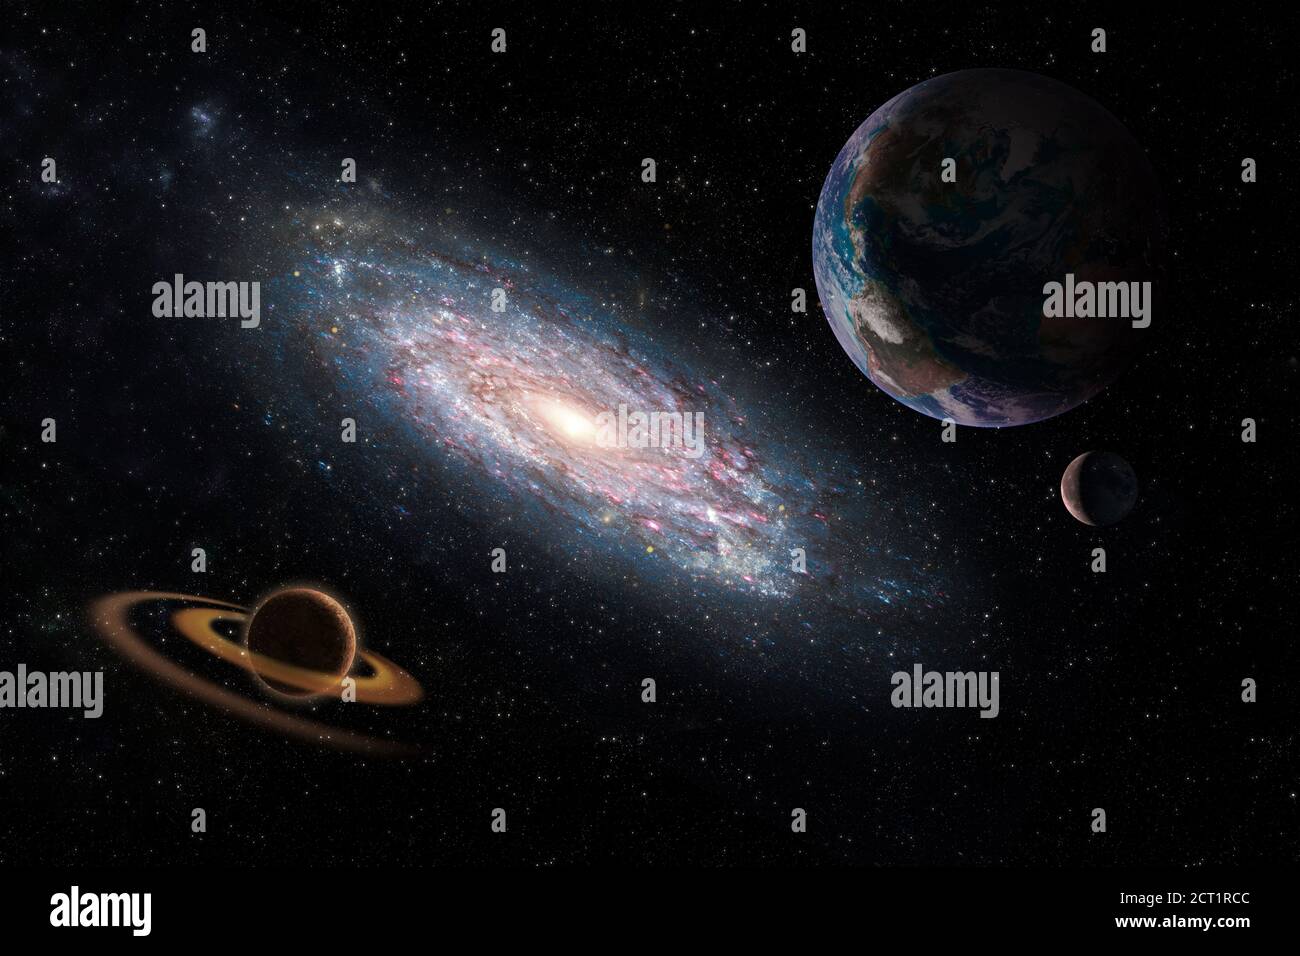 Andromeda mit Planeten tiefen Raum Fantasie Hintergrund Bild Elemente Dieses Bild wurde von der NASA eingerichtet Stockfoto